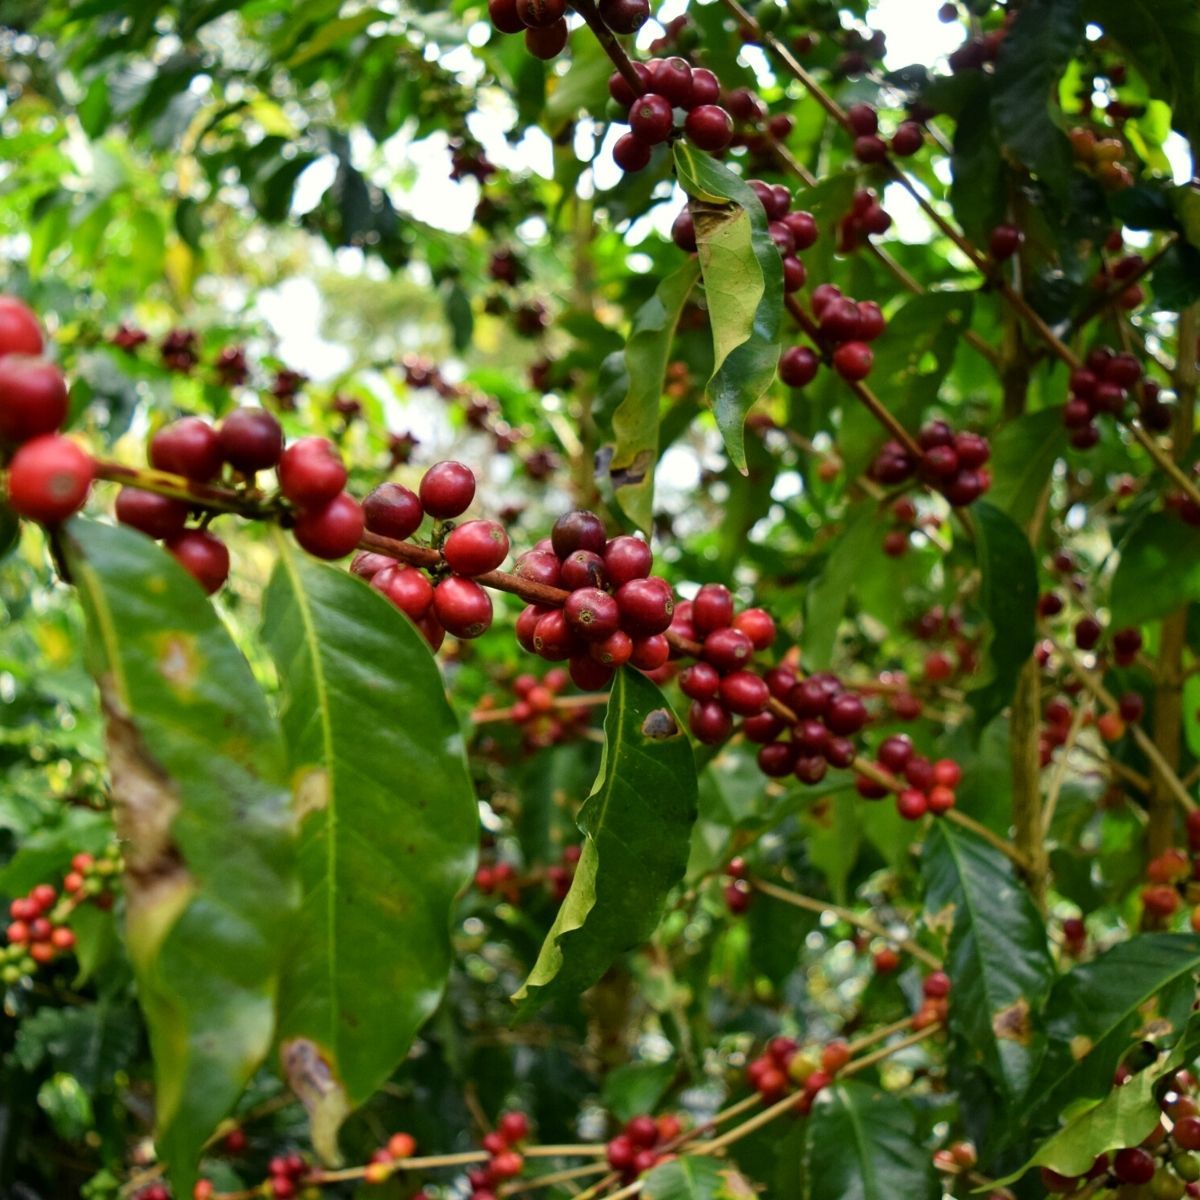 Assortiment café en grain équitable bio